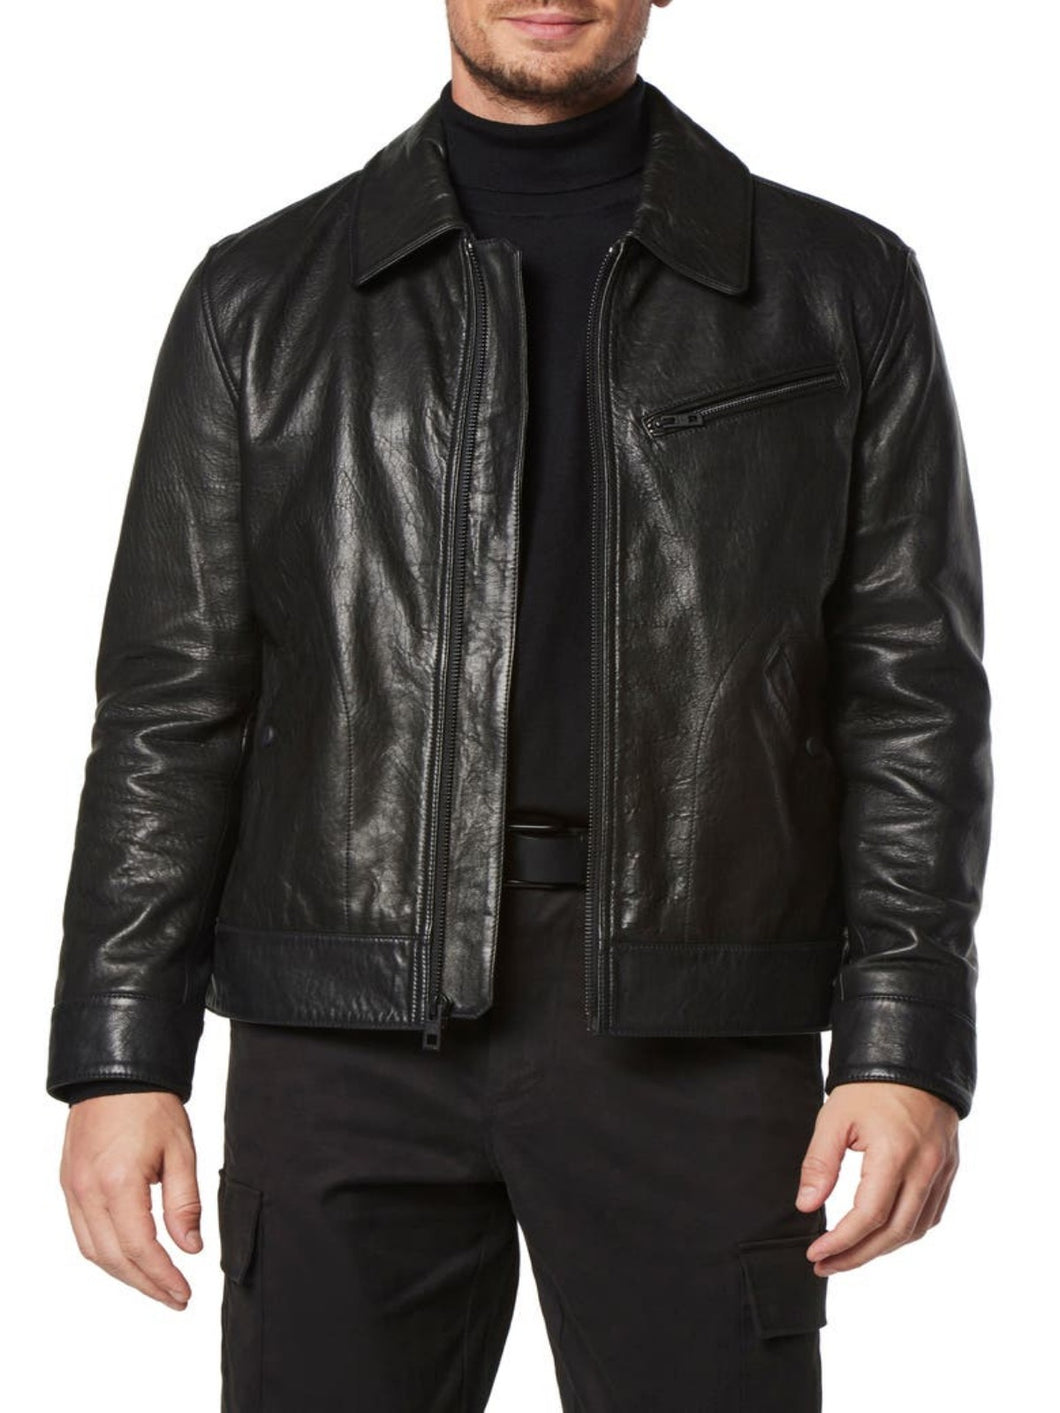 Mens Black Designer Motorcycle Leather Jacket